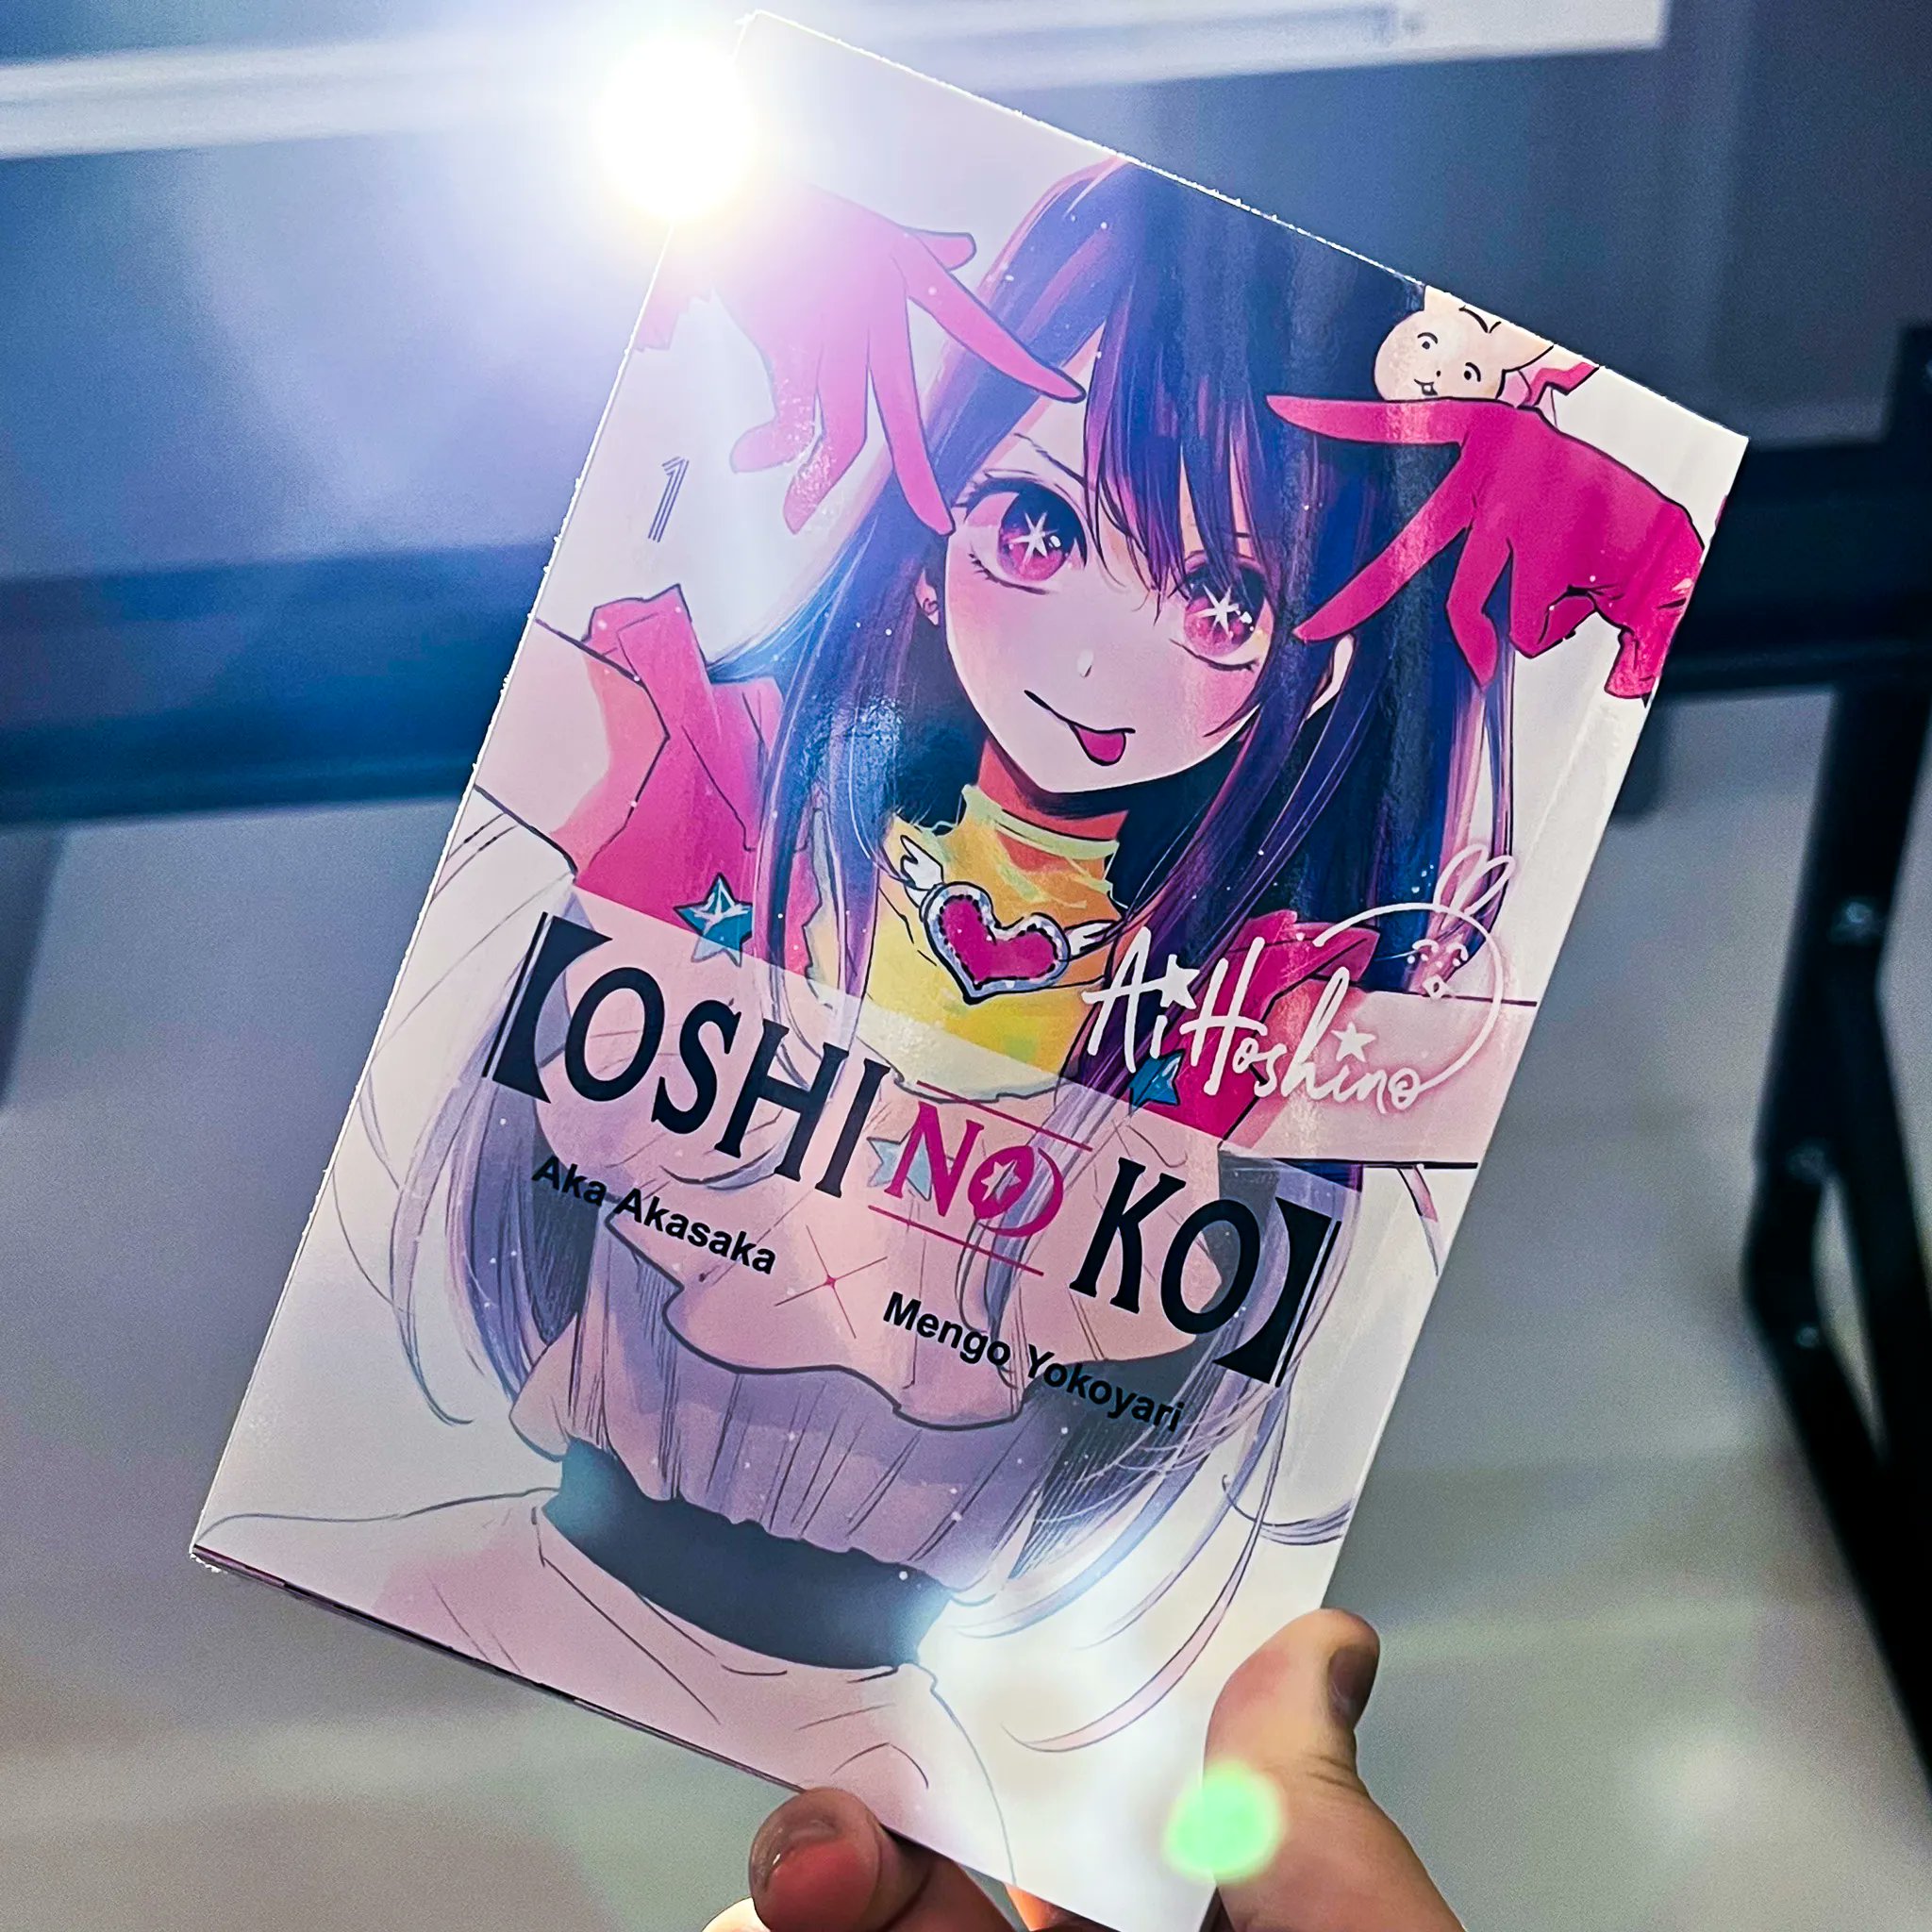 Oshi No Ko], Vol. 1: Volume 1